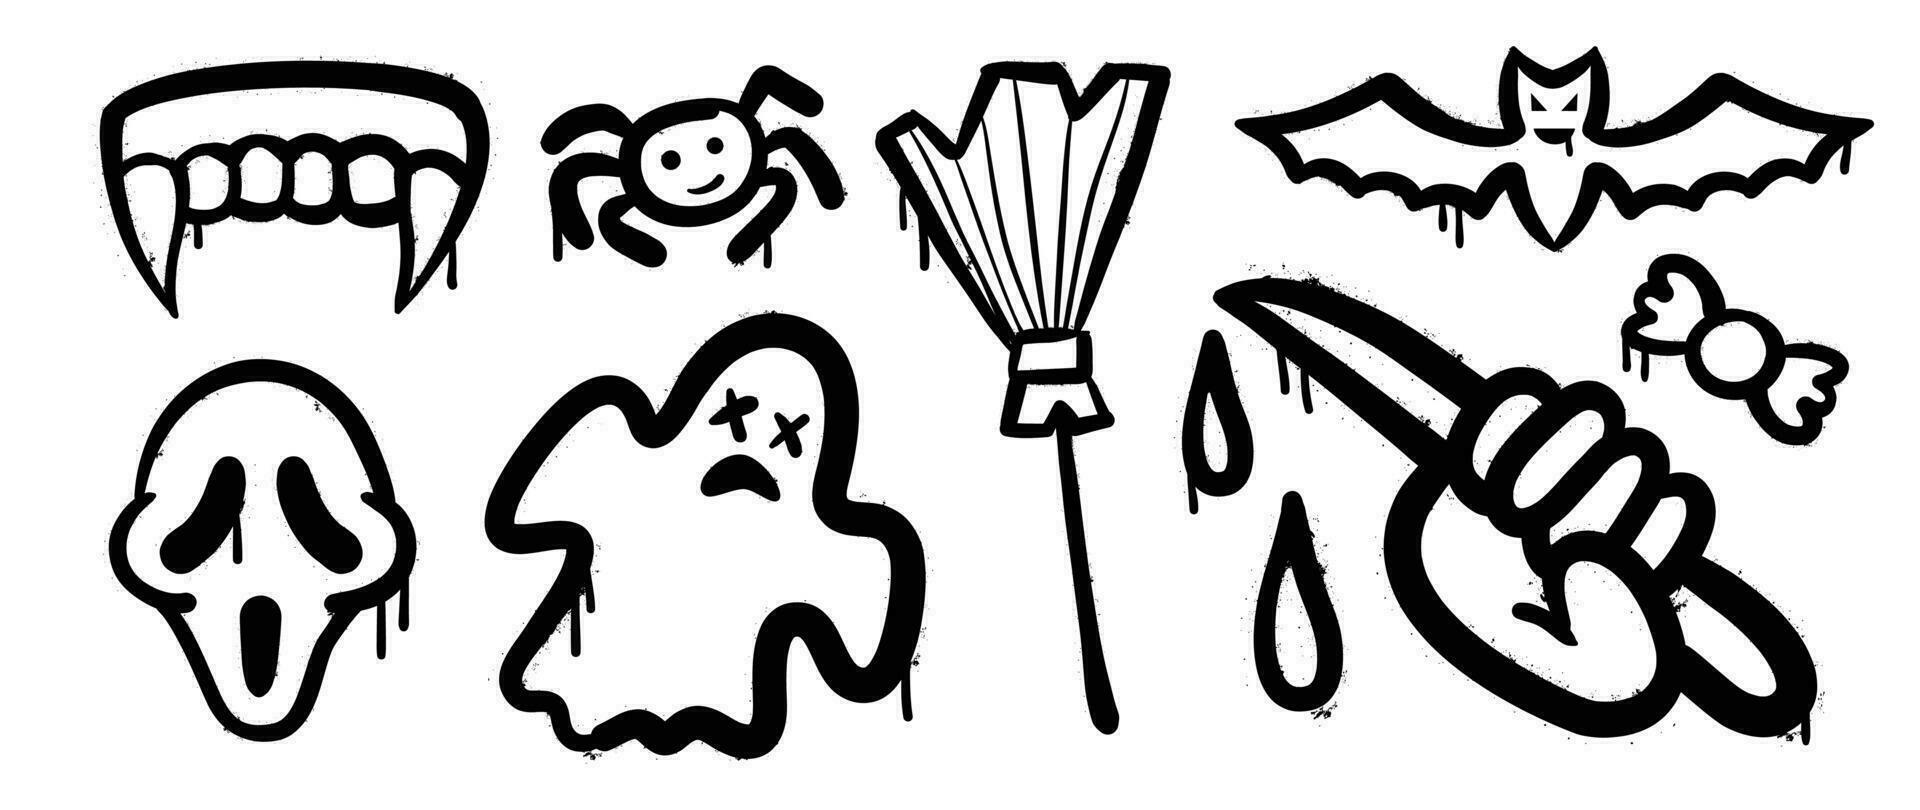 reeks van graffiti verstuiven patroon. verzameling van halloween symbolen, geest, schedel, snoep, knuppel, mes, spin met verstuiven textuur. elementen Aan wit achtergrond voor sticker, banier, decoratie, straat kunst. vector